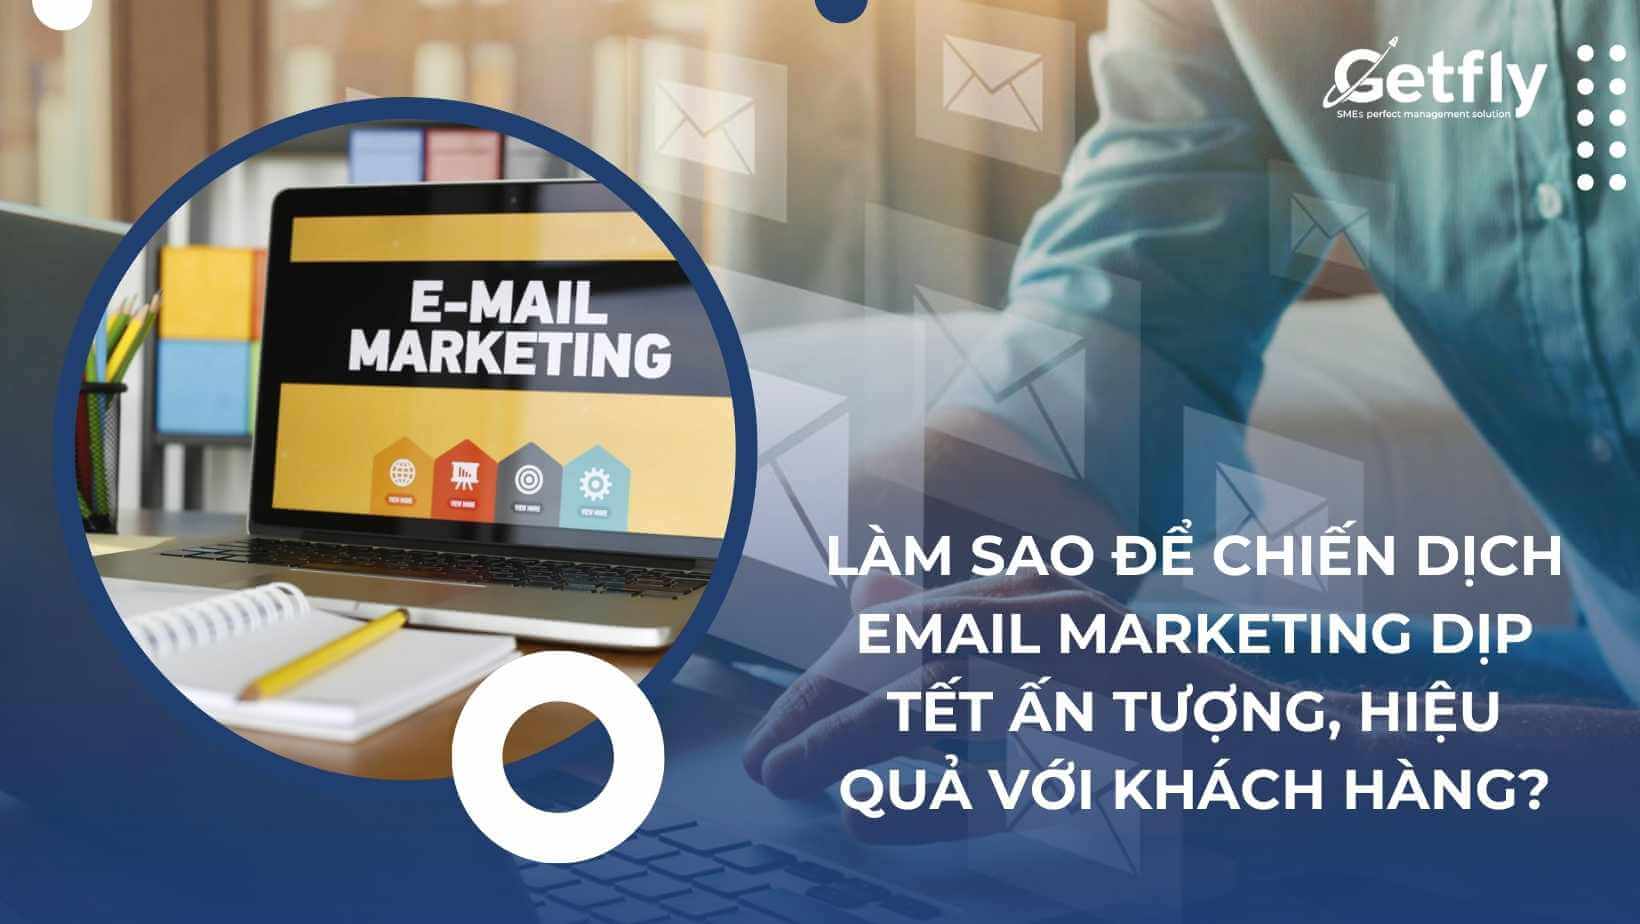 Làm sao để chiến dịch Email Marketing dịp Tết ấn tượng, hiệu quả với khách hàng?